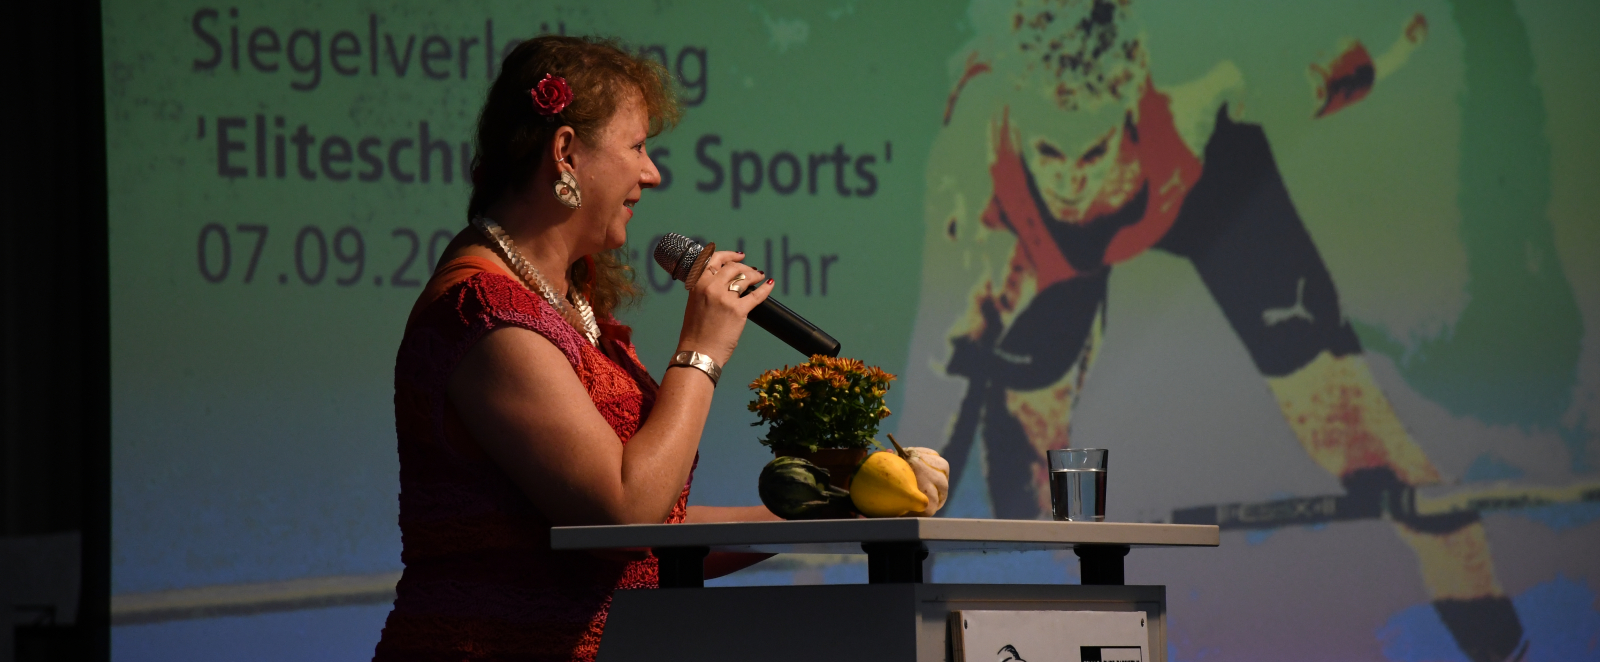 Andrea Milz besuchte die Veranstaltung in Dortmund